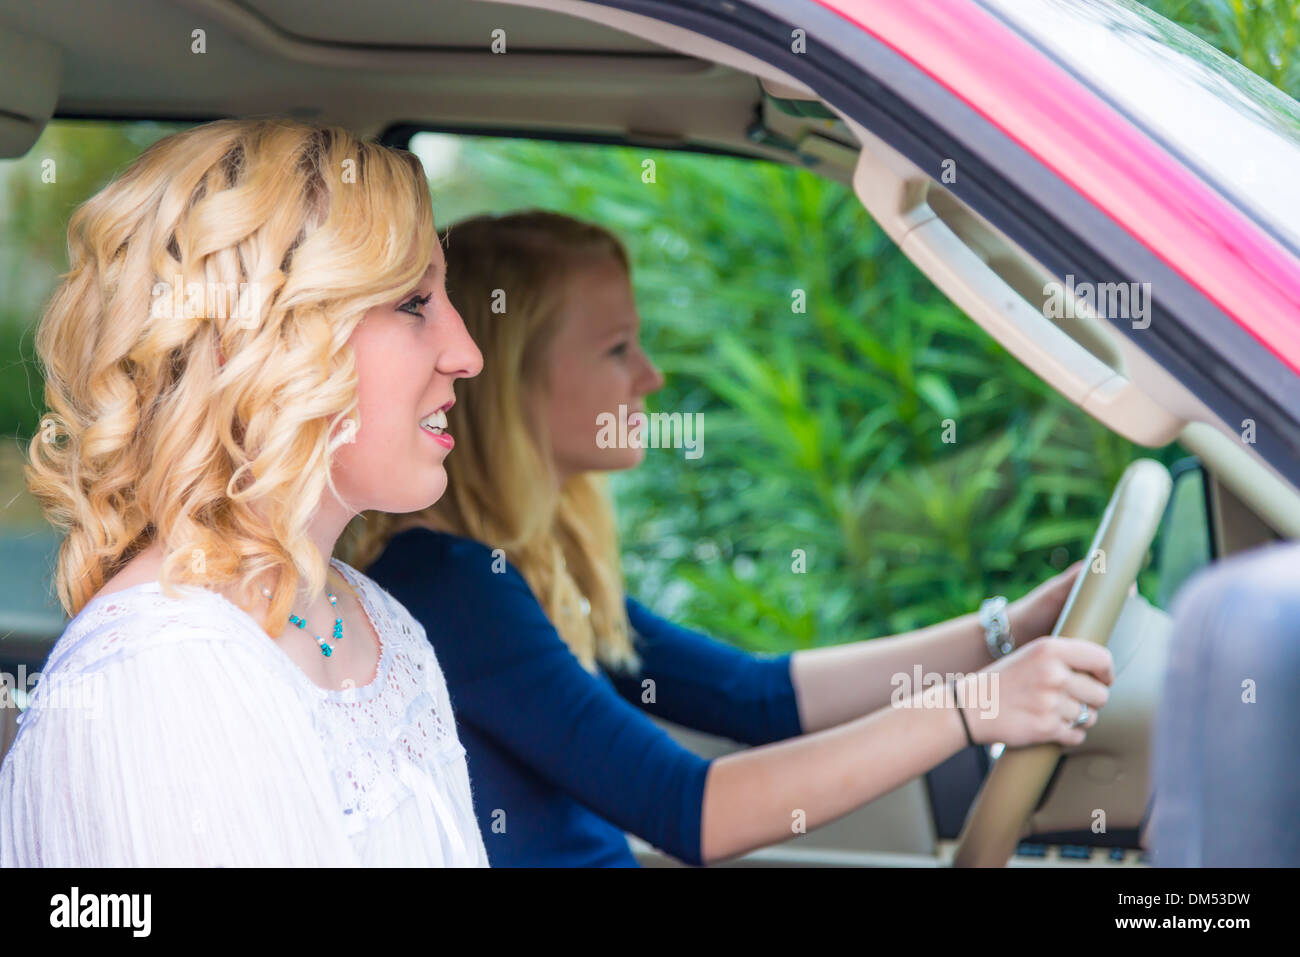 Zwei amerikanische Teenager Mädchen von sechzehn 16 Jahren sitzen in großen Automobil- und sind im Begriff zu vertreiben. Stockfoto